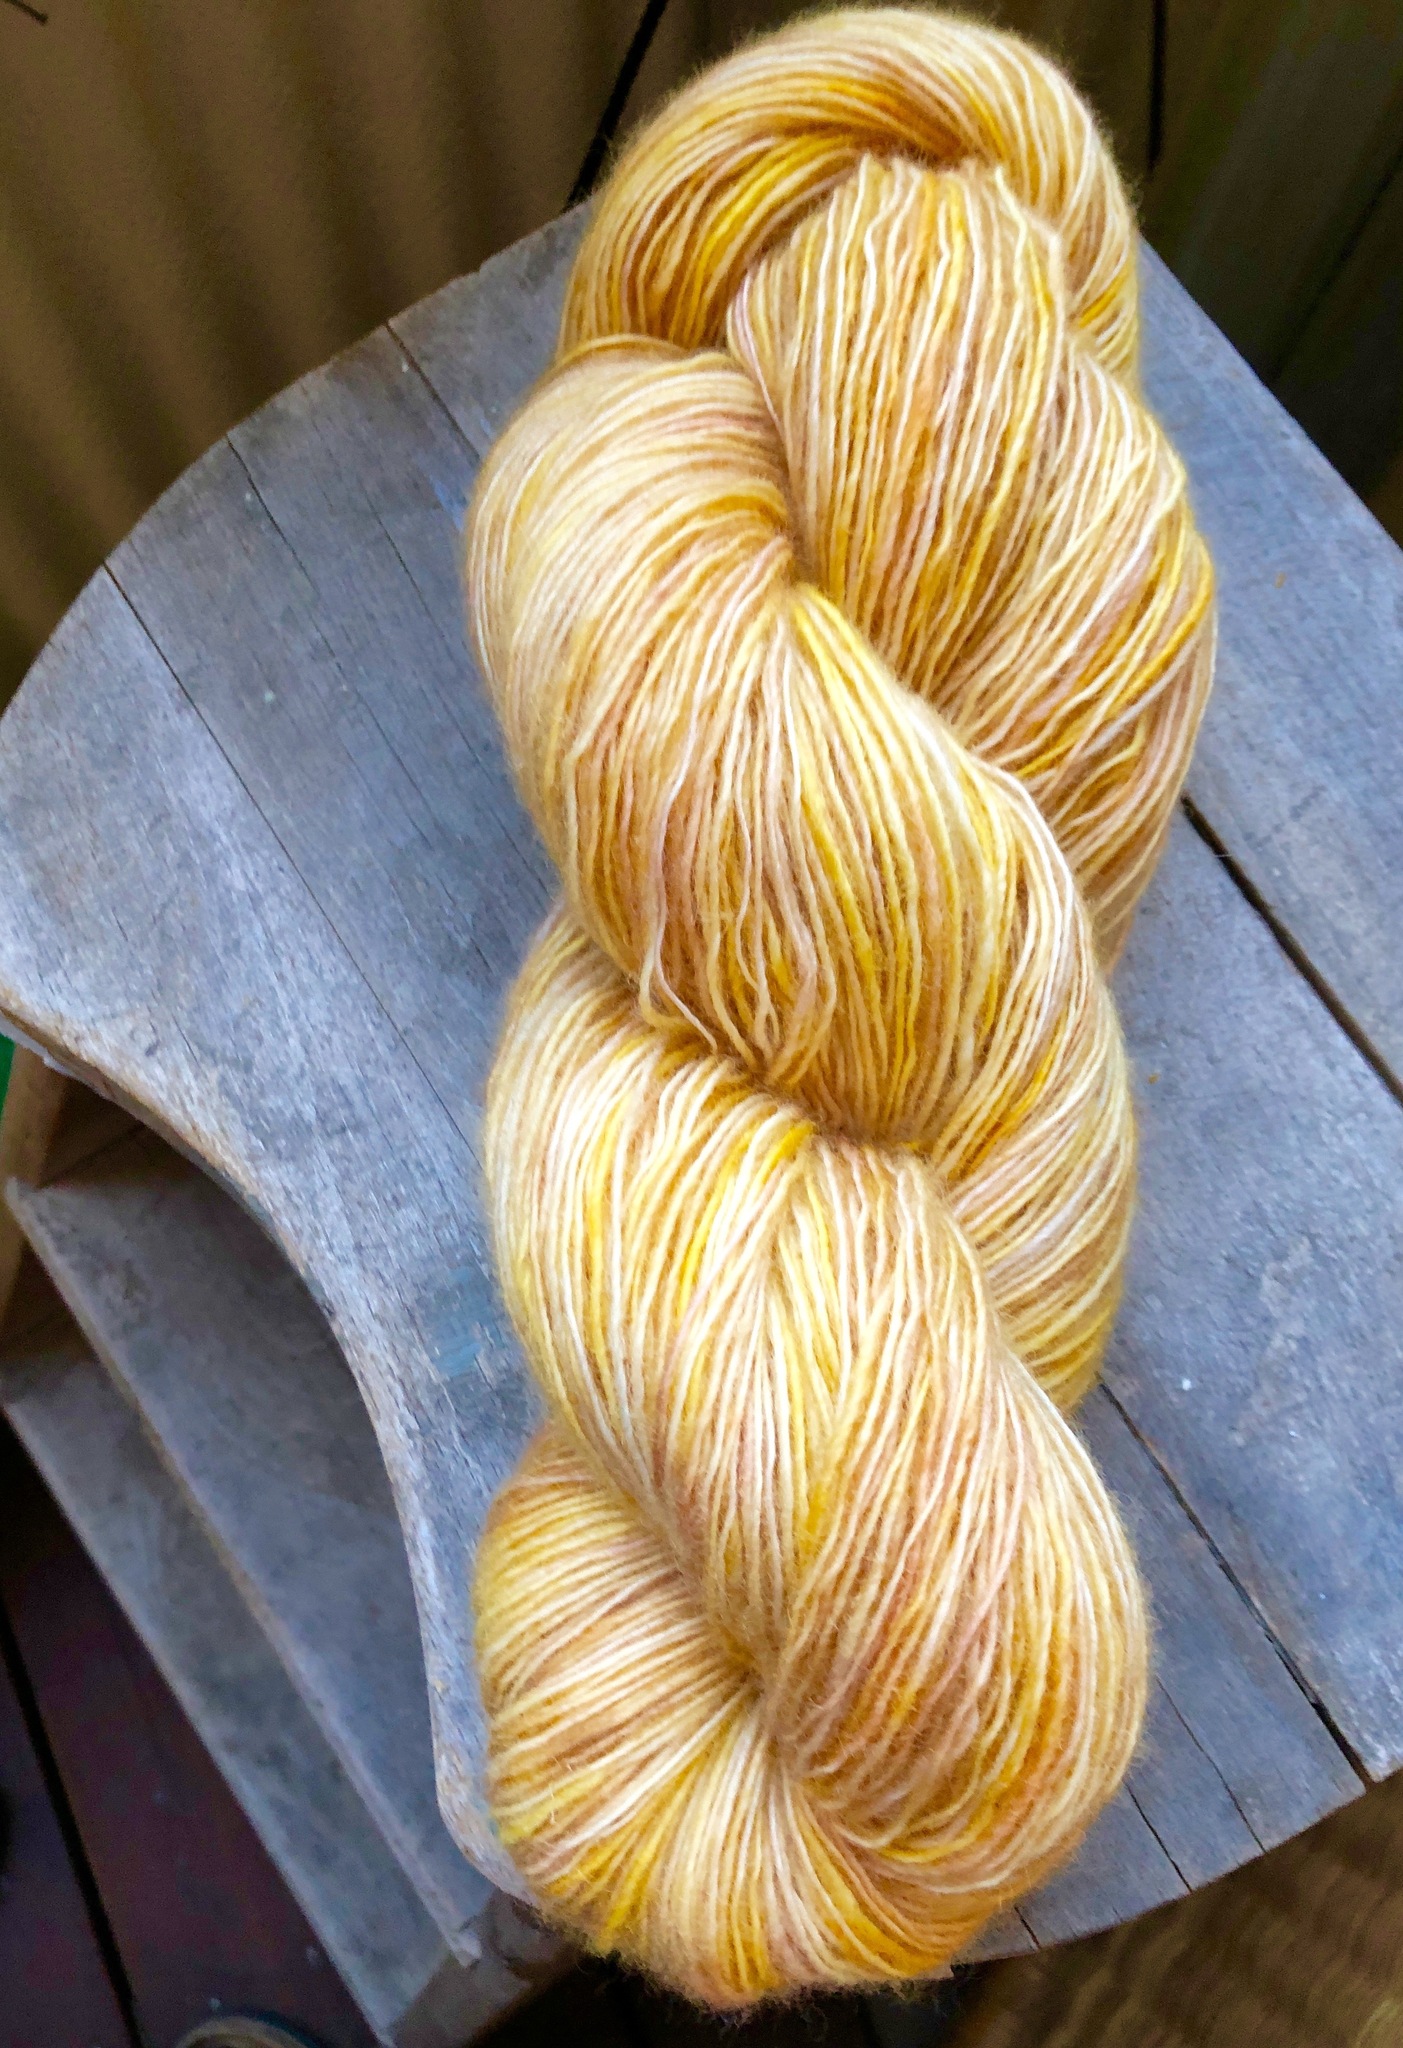 Varm gul/beige/sand handfärgat 1-trådigt garn (440 m/100 g) i 100 % obehandlad svensk vit ull från Gotland, 80% ekologisk ull.